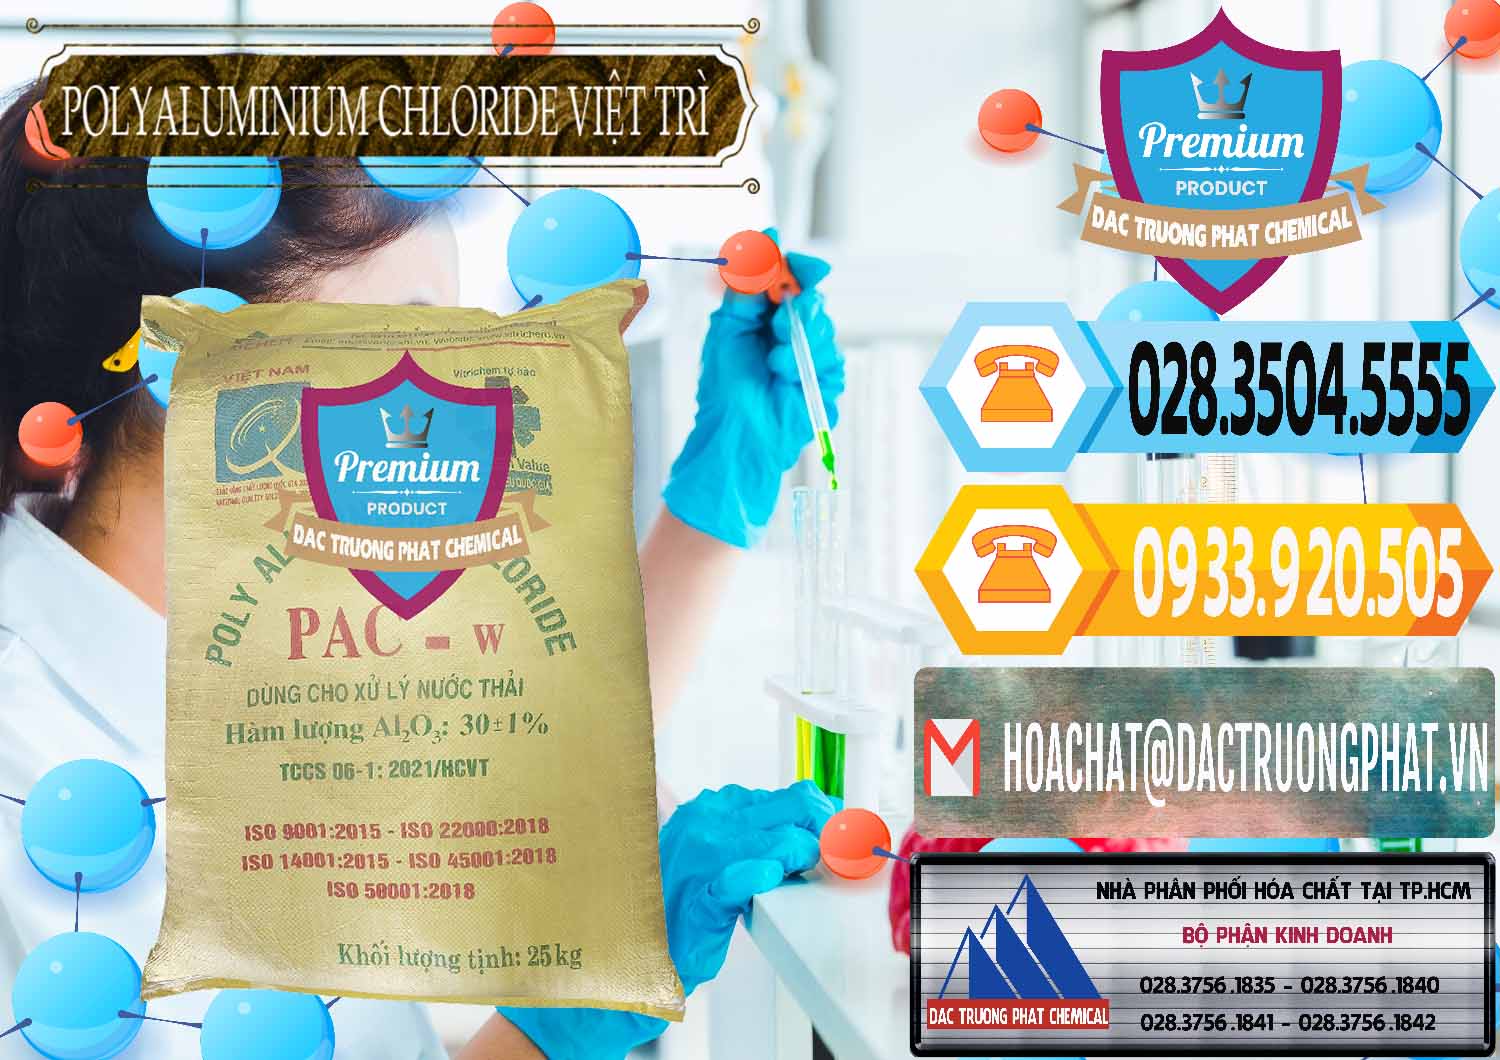 Nơi chuyên kinh doanh và cung cấp PAC - Polyaluminium Chloride Việt Trì Việt Nam - 0487 - Cty cung cấp - bán hóa chất tại TP.HCM - hoachattayrua.net